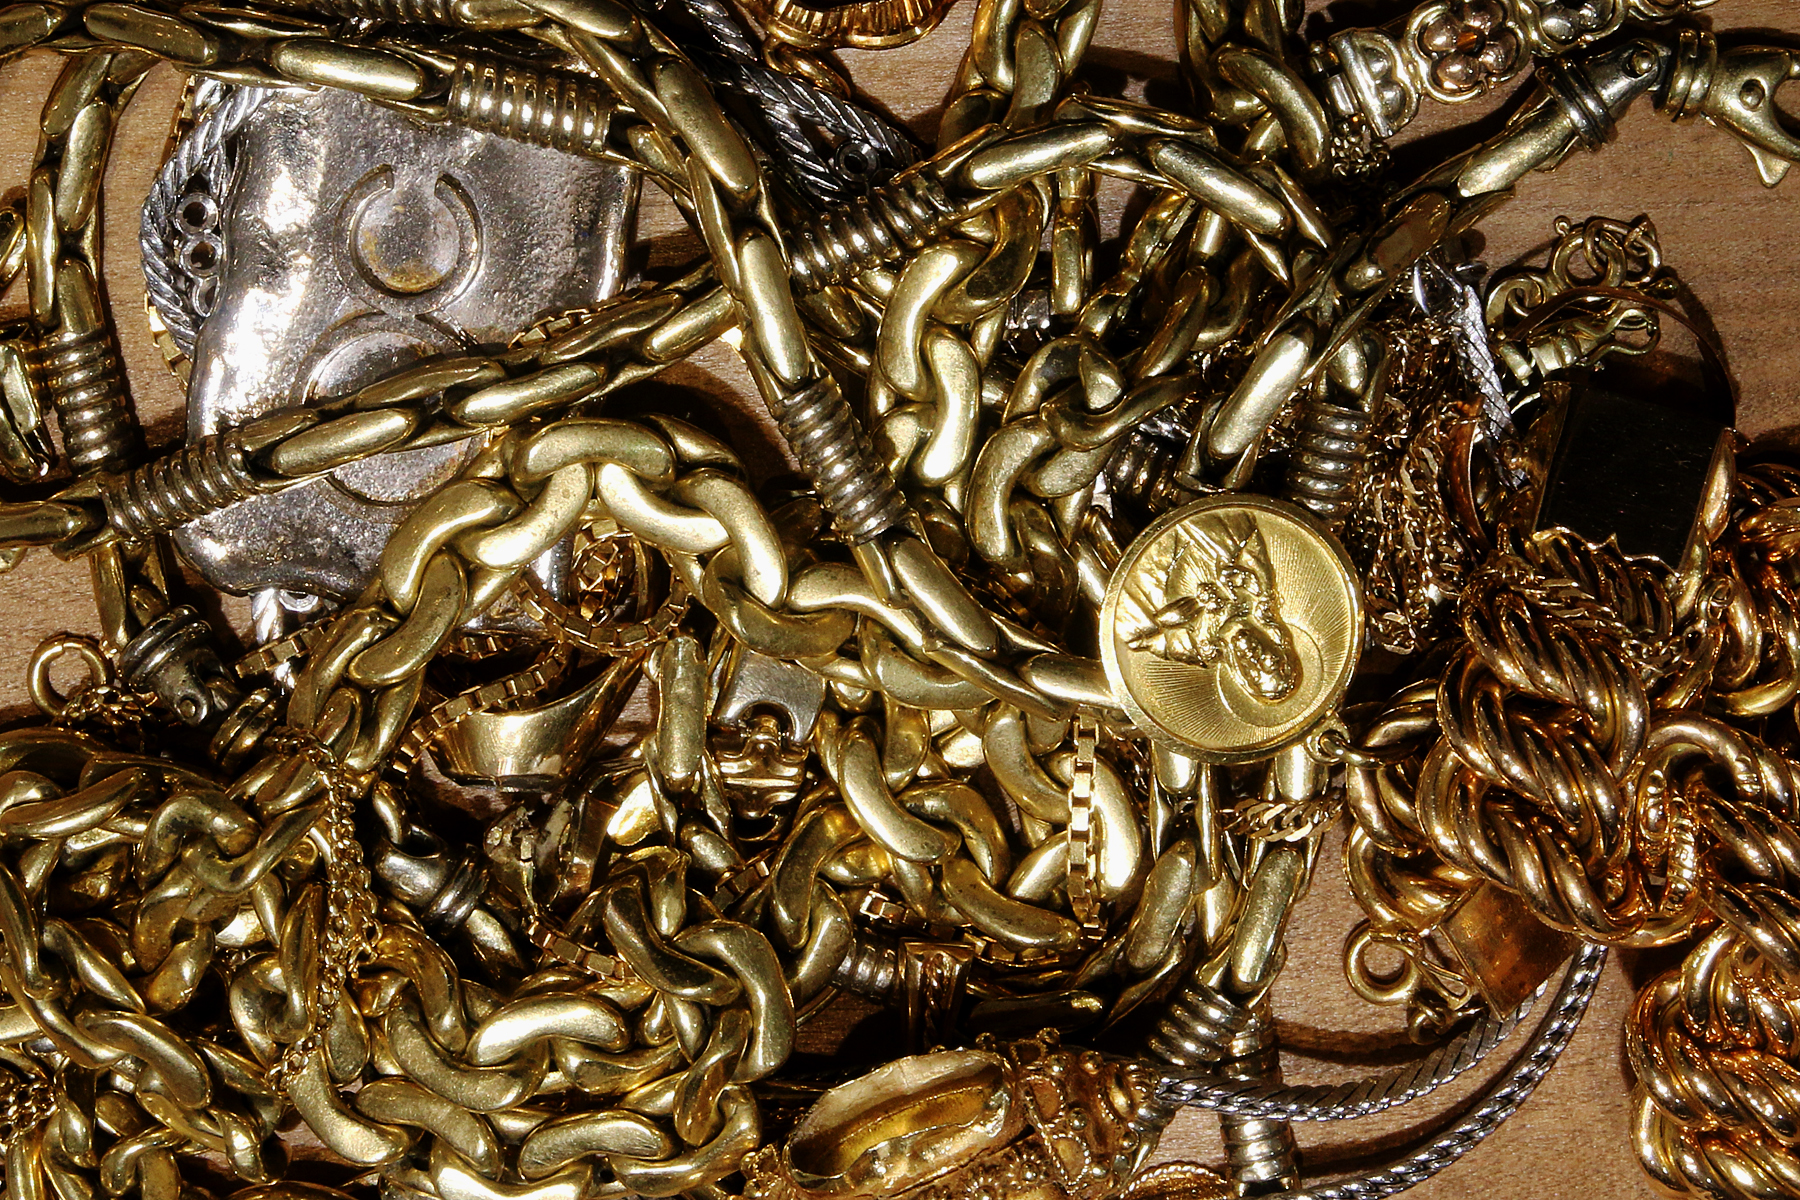 Aftrekken Zware vrachtwagen Dekbed Voorwerpen uit goud kopen in Antwerpen - Gold Company | Zilver, Goud kopen  Antwerpen